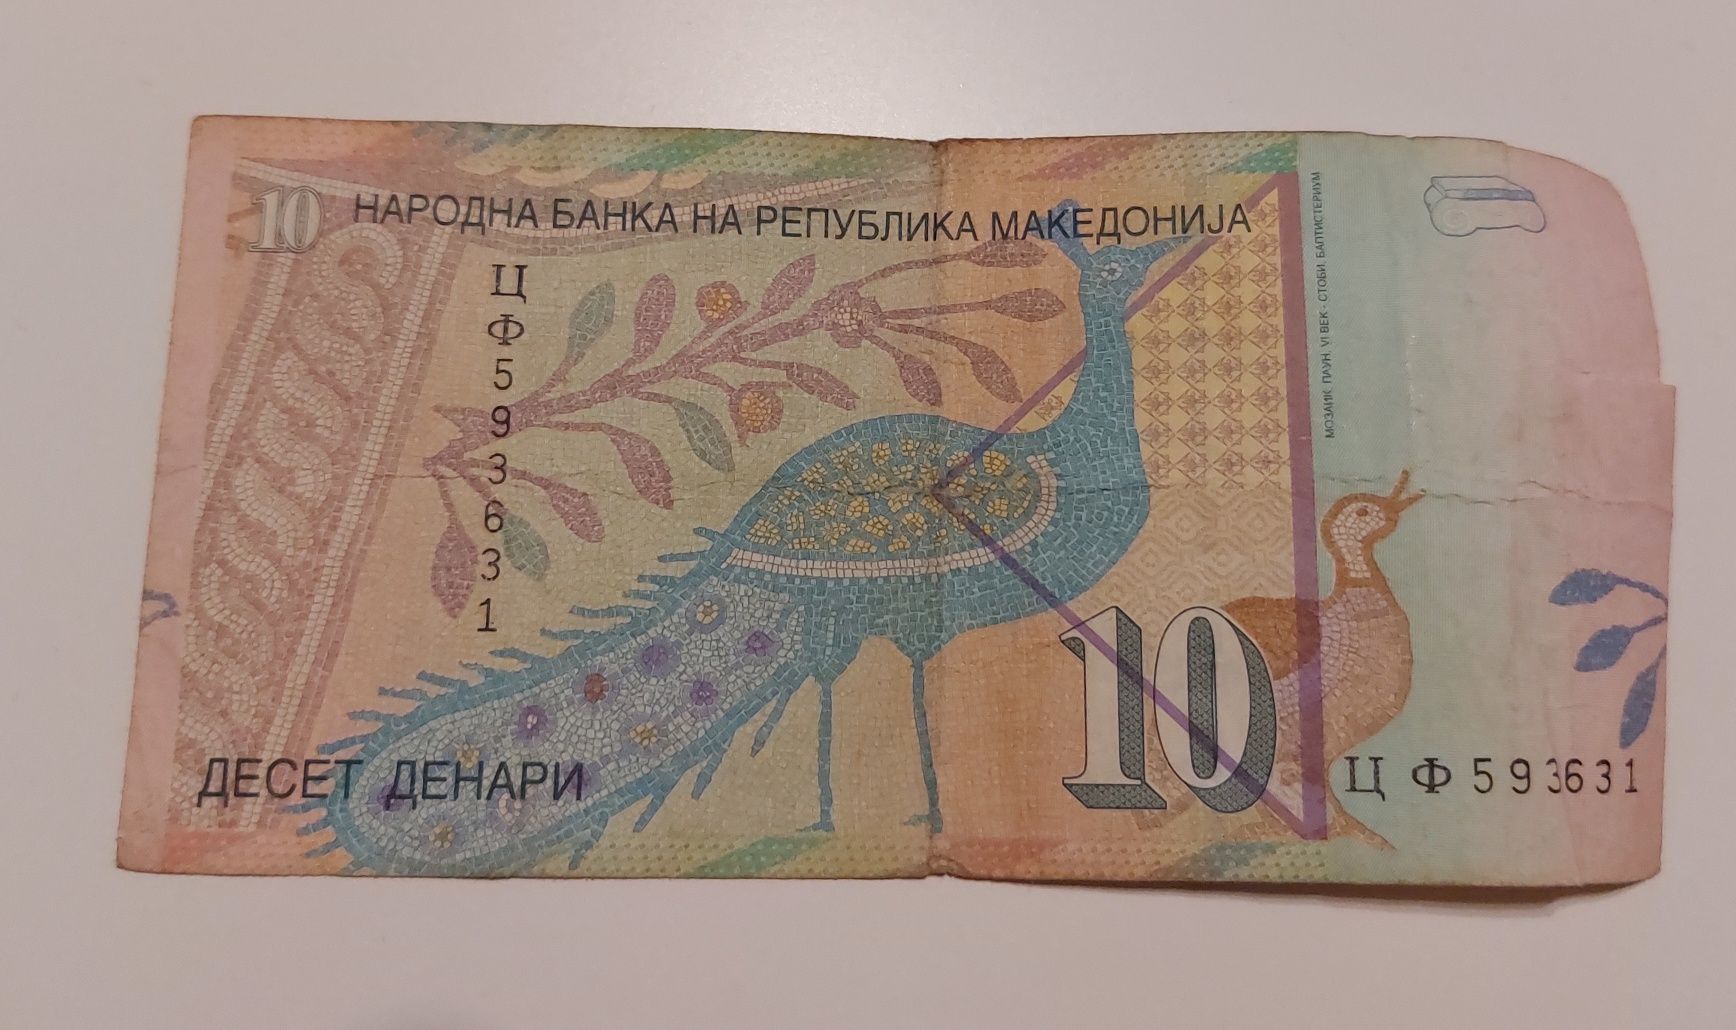 Banknot Macedonia 10 denari